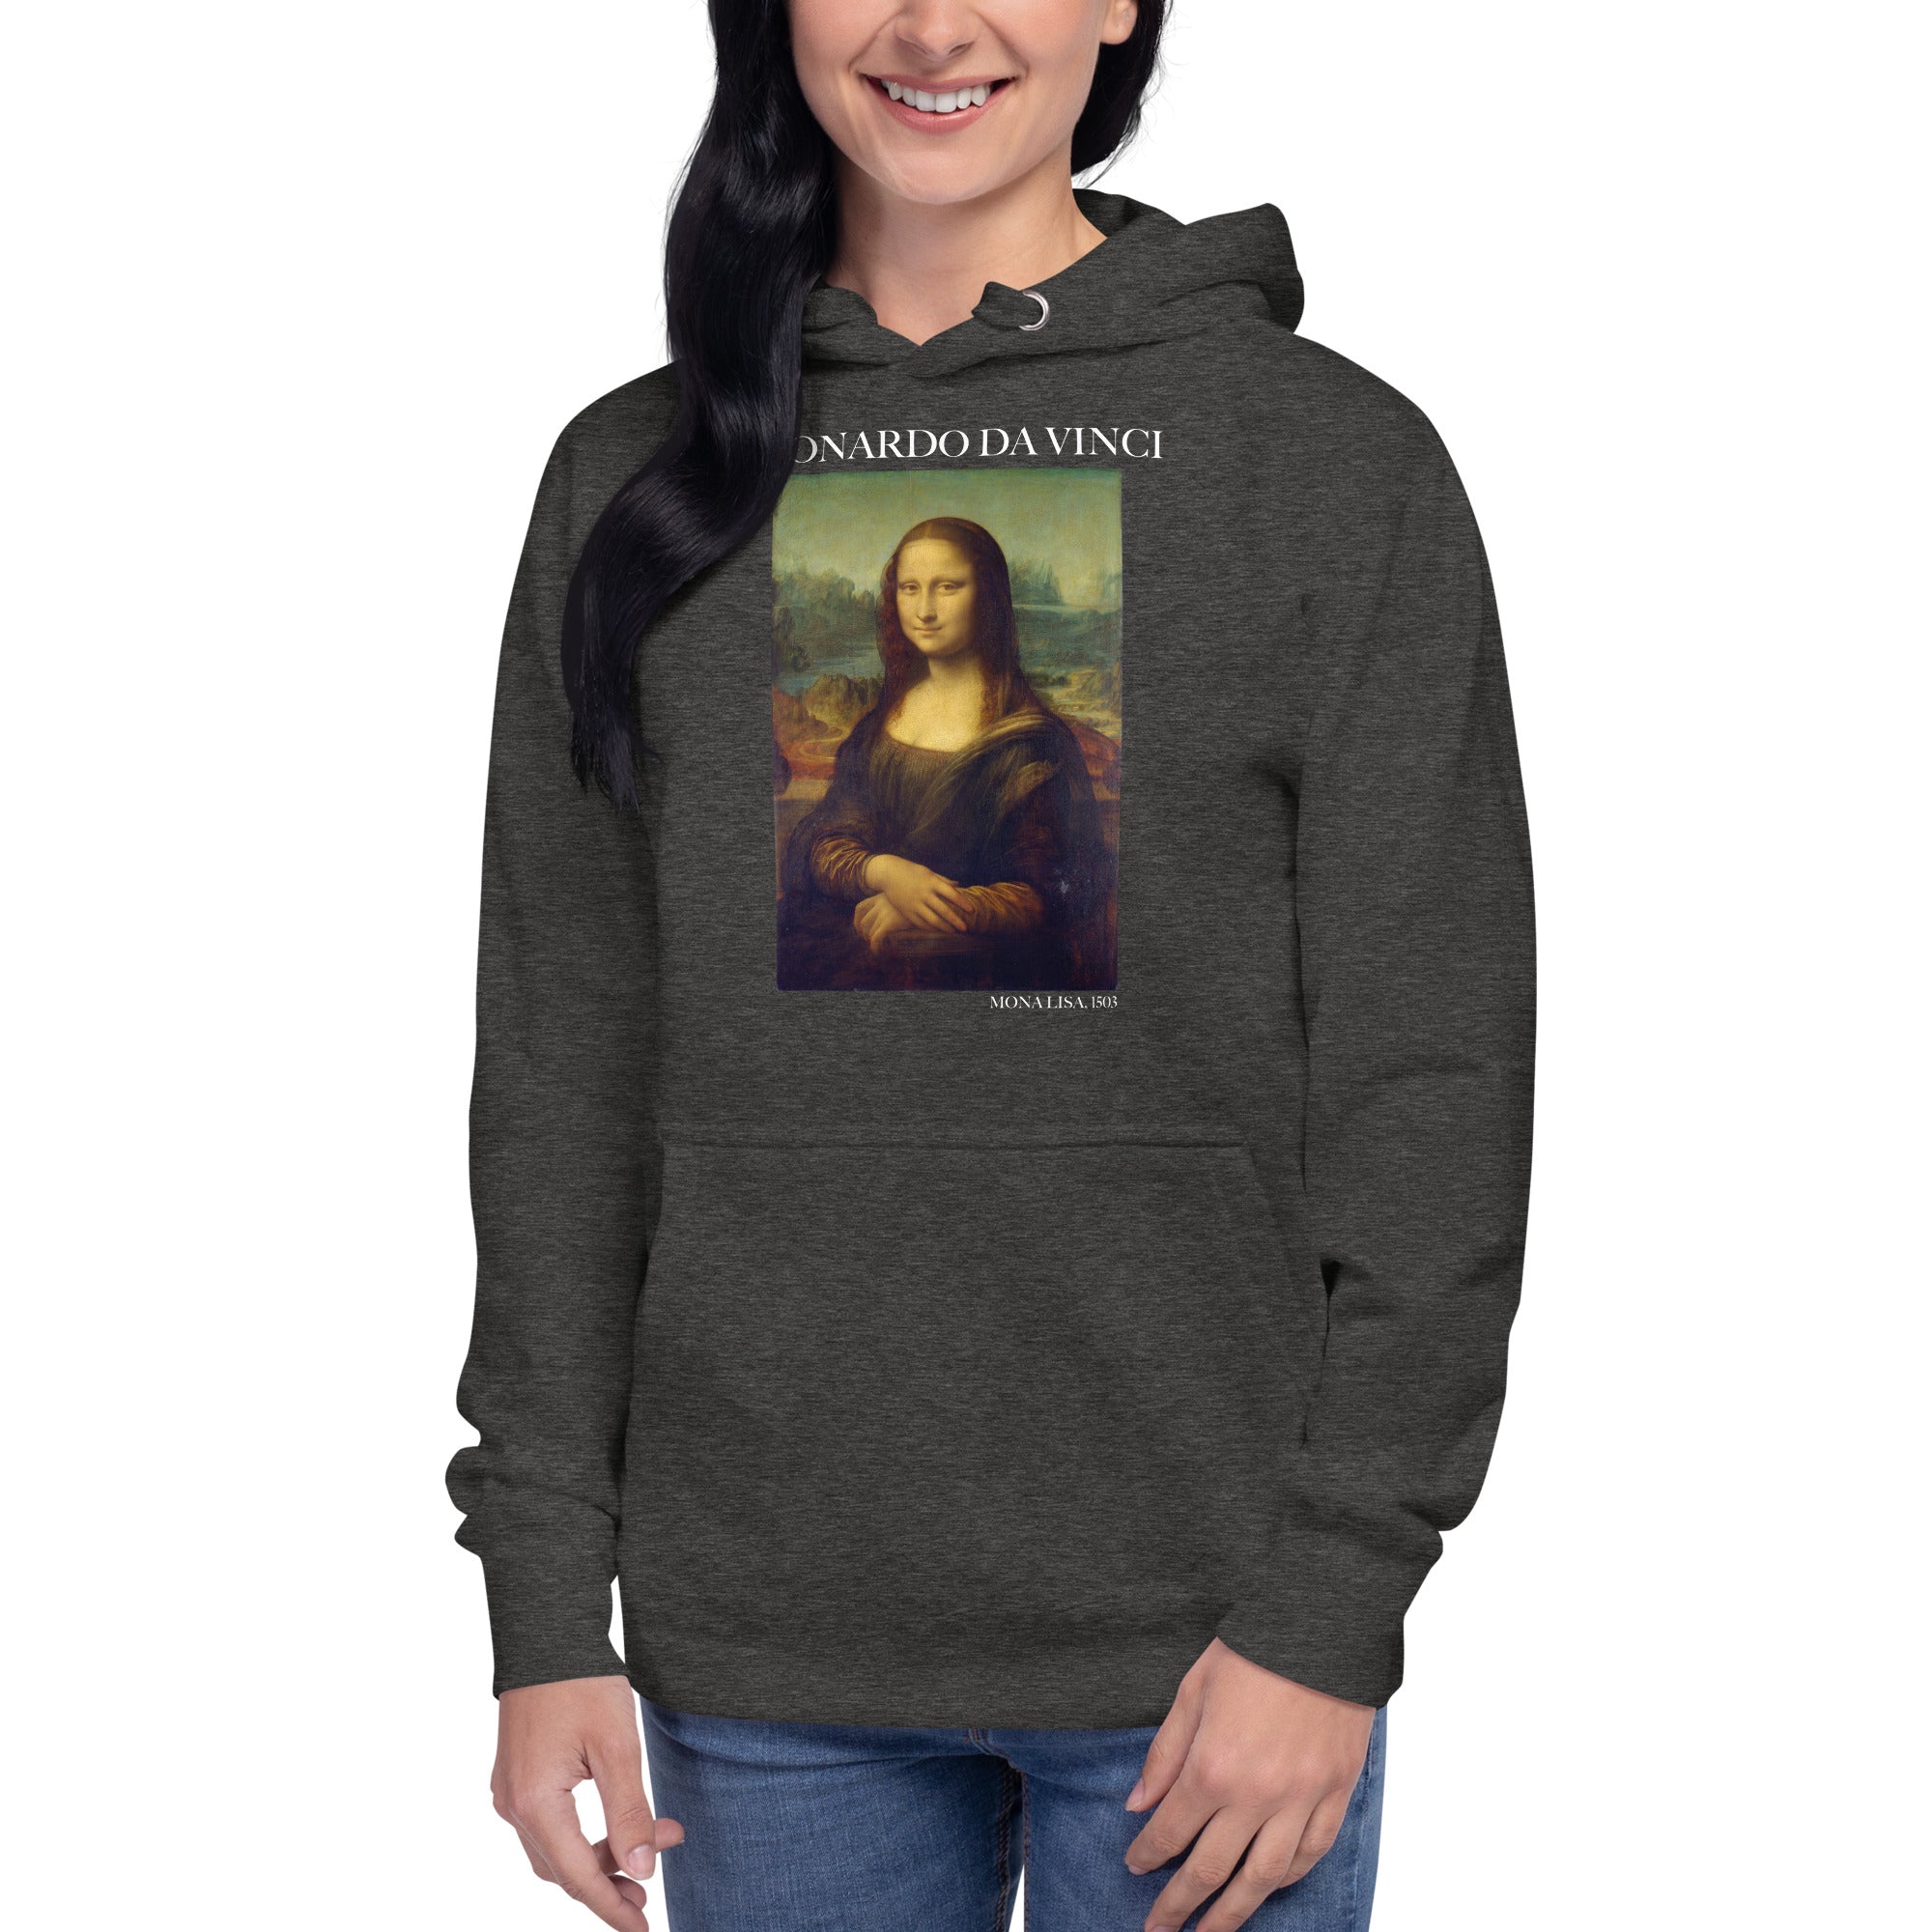 Leonardo da Vinci 'Mona Lisa' Famous Painting Hoodie | Unisex Premium Art Hoodie